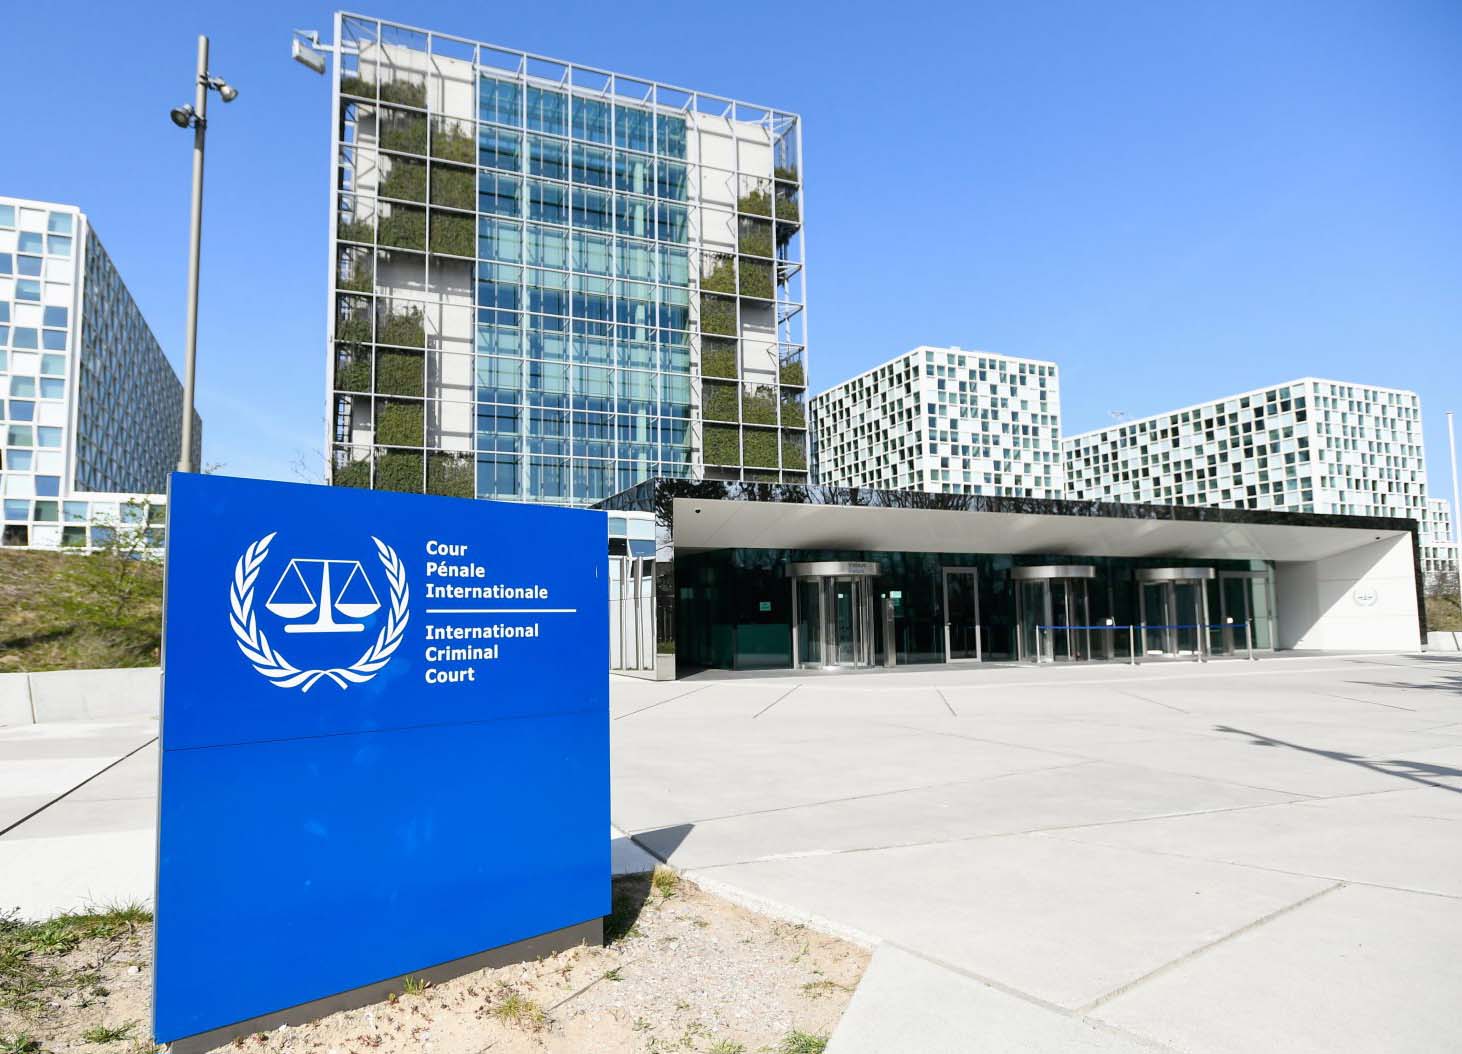  Միջազգային քրեական դատարանում քննարկել են Հայաստանի համար կարողությունների զարգացման հնարավոր ծրագրերը 